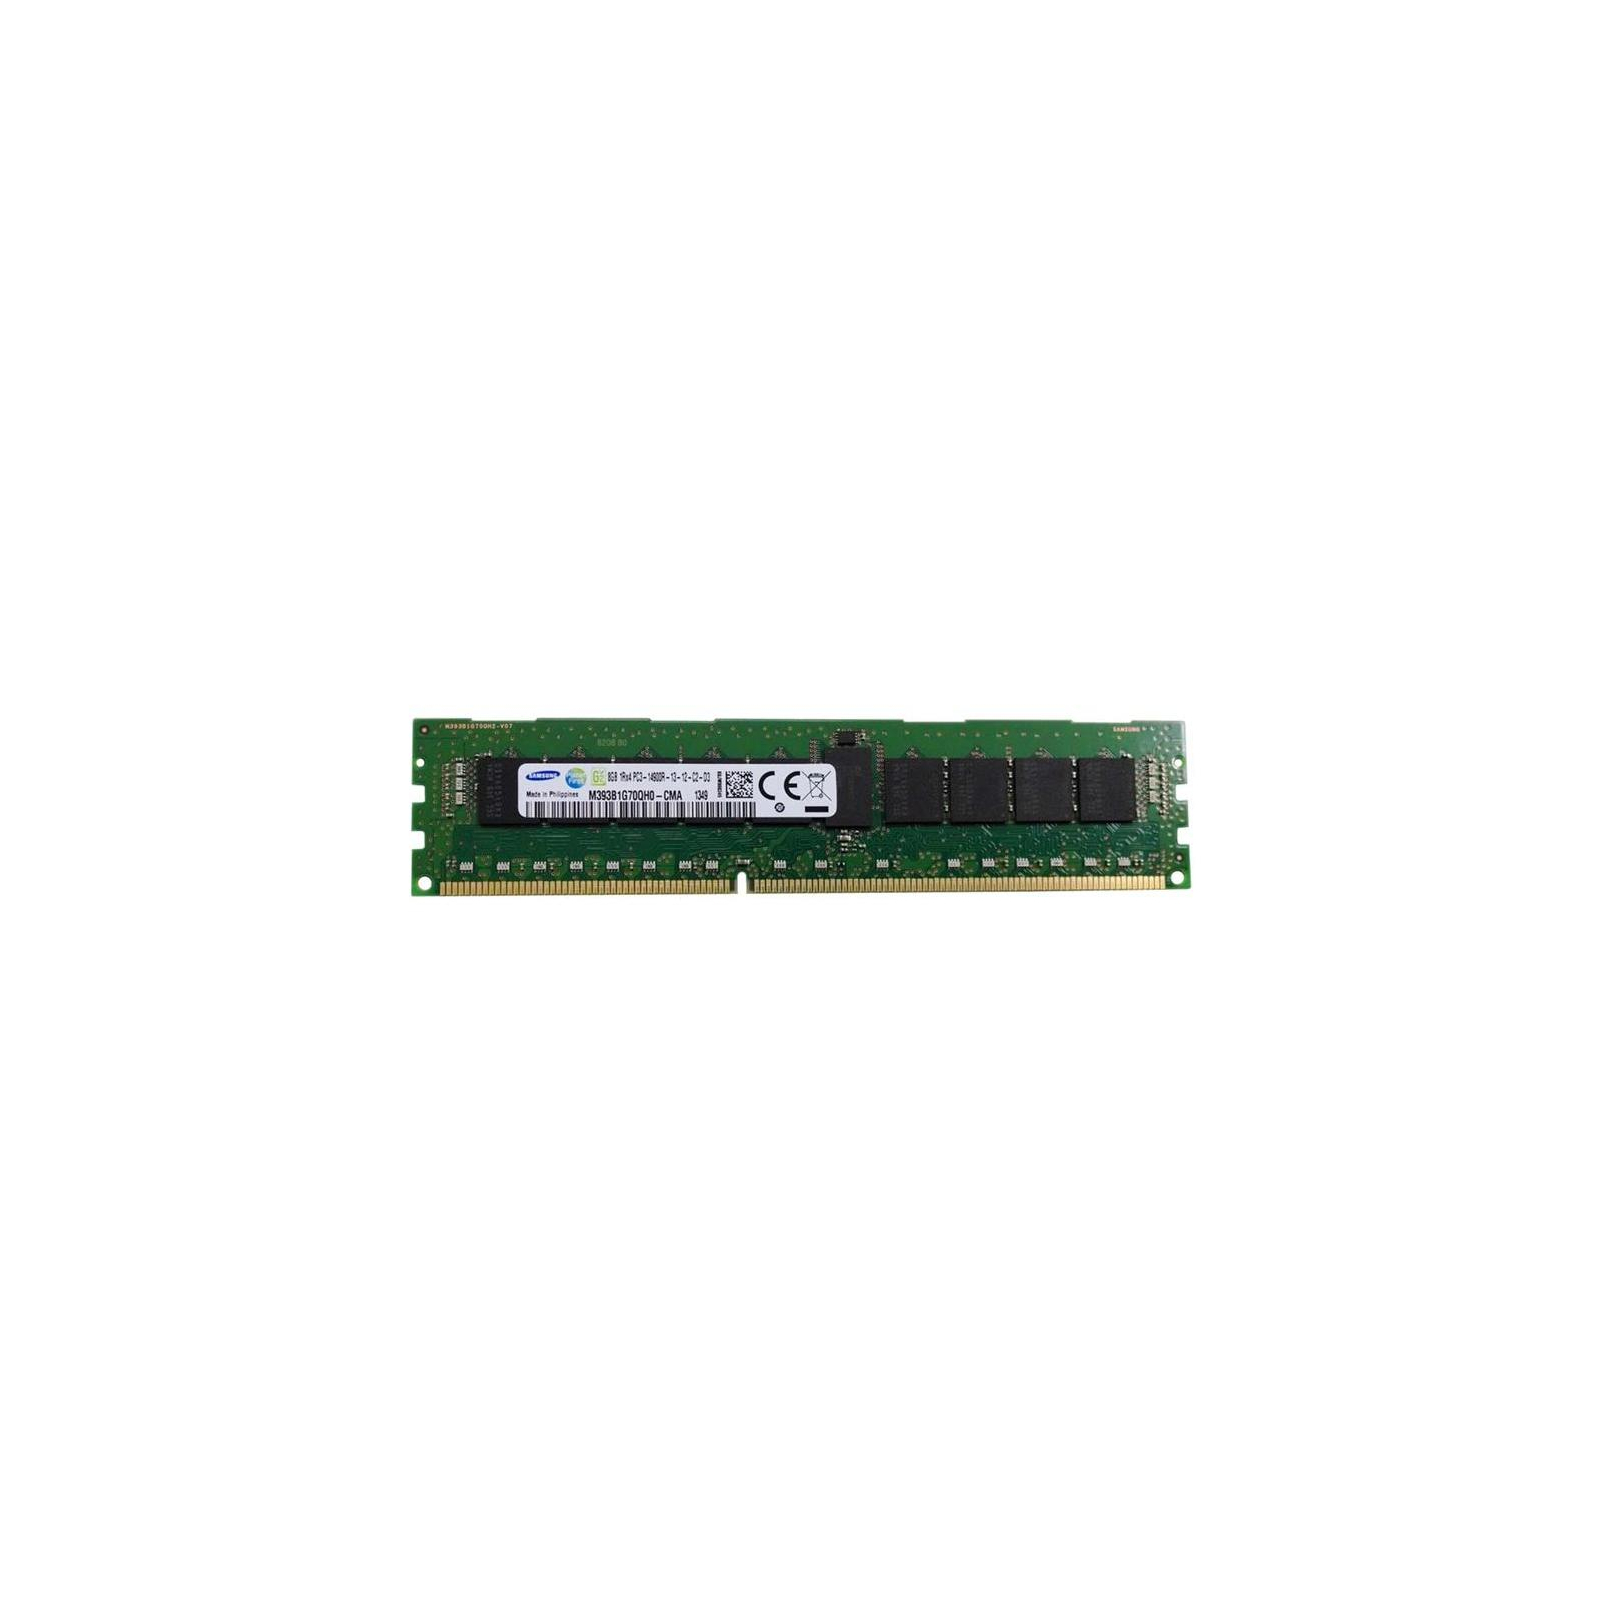 Модуль памяти для сервера DDR3 8GB ECC RDIMM 1866MHz 1Rx4 1.5/1.35V CL13 Samsung (M393B1G70QH0-CMA)